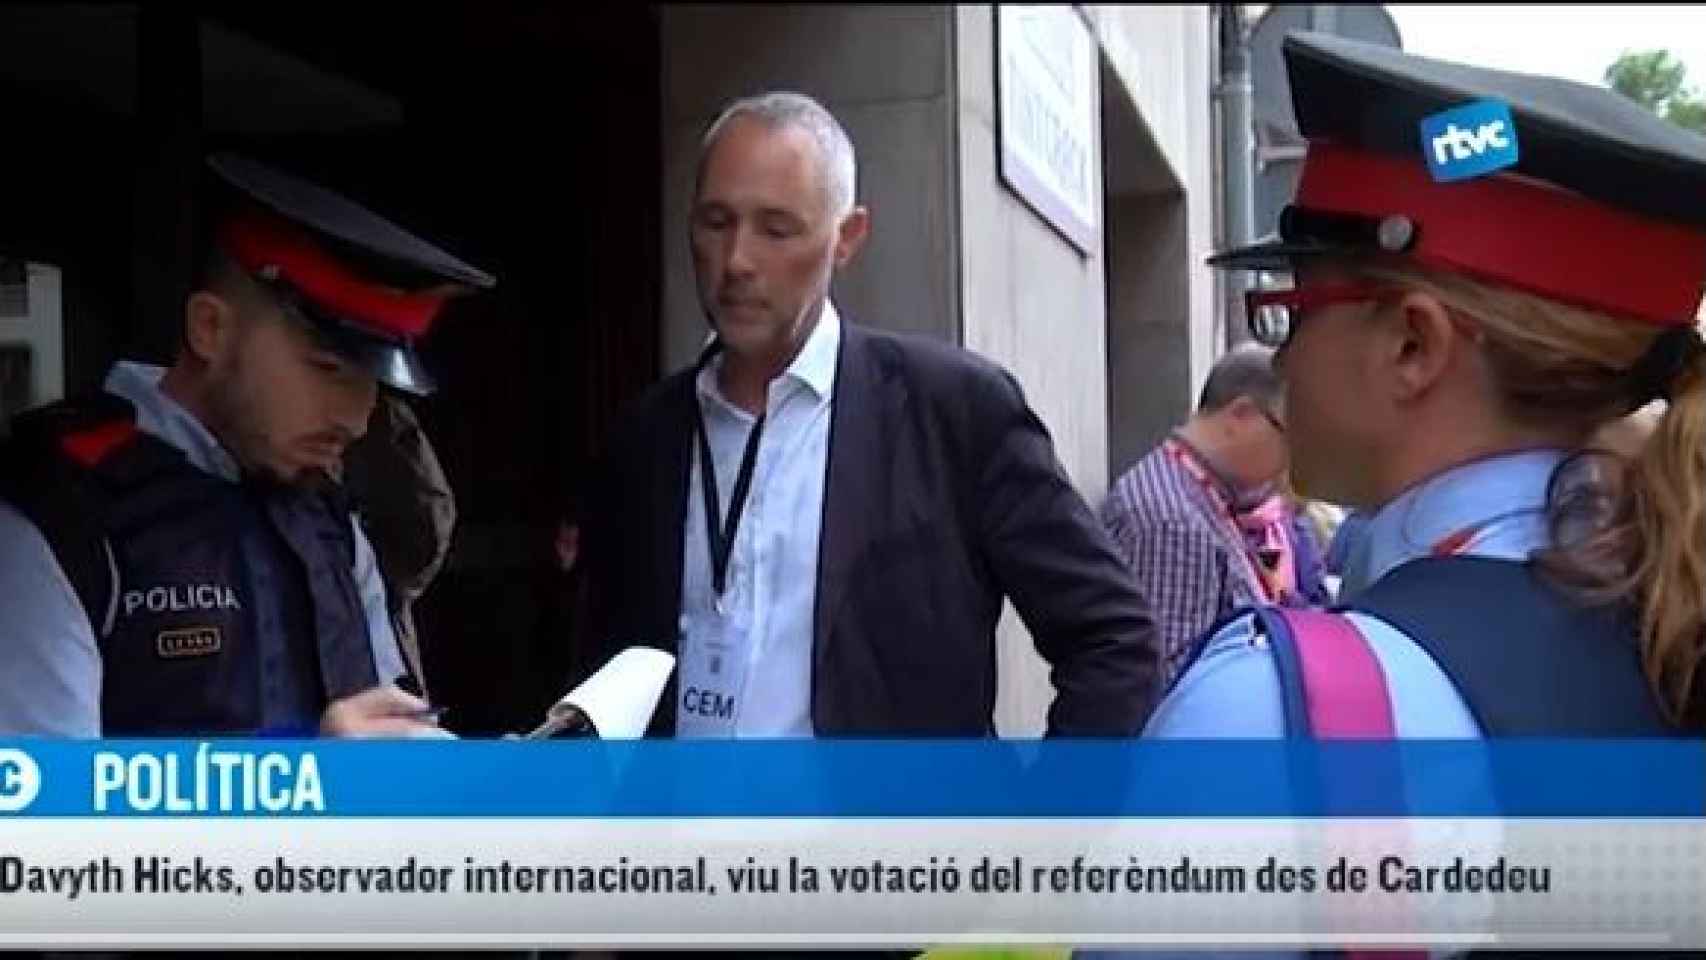 Un binomio de mossos ante el centro de Cardedeu, con un 'observador internacional'.